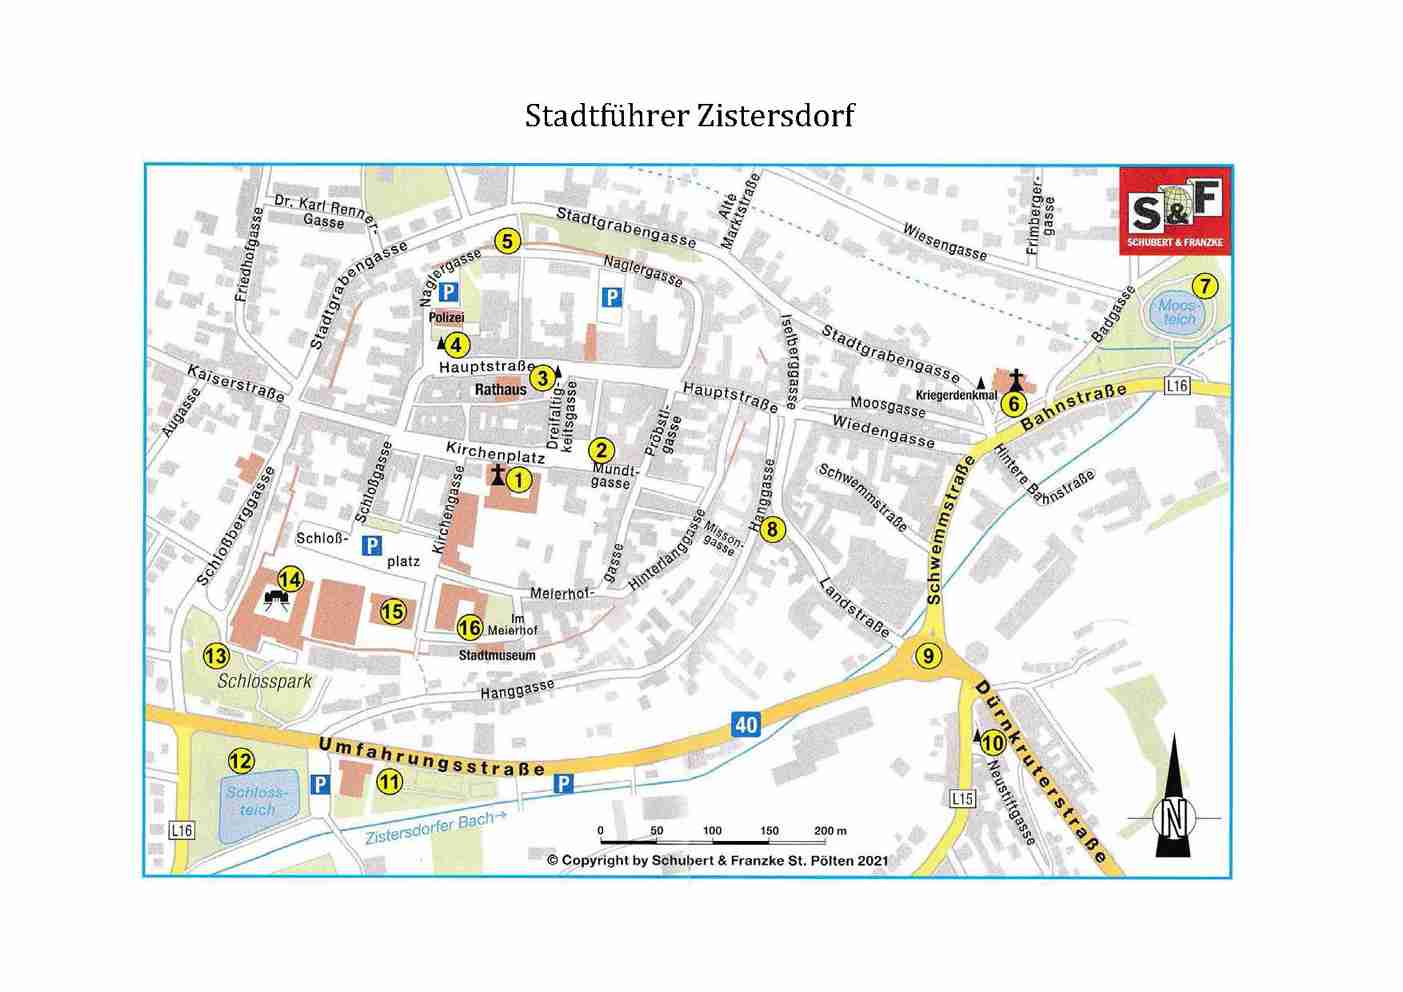 Stadtrundgang Zistersdorf